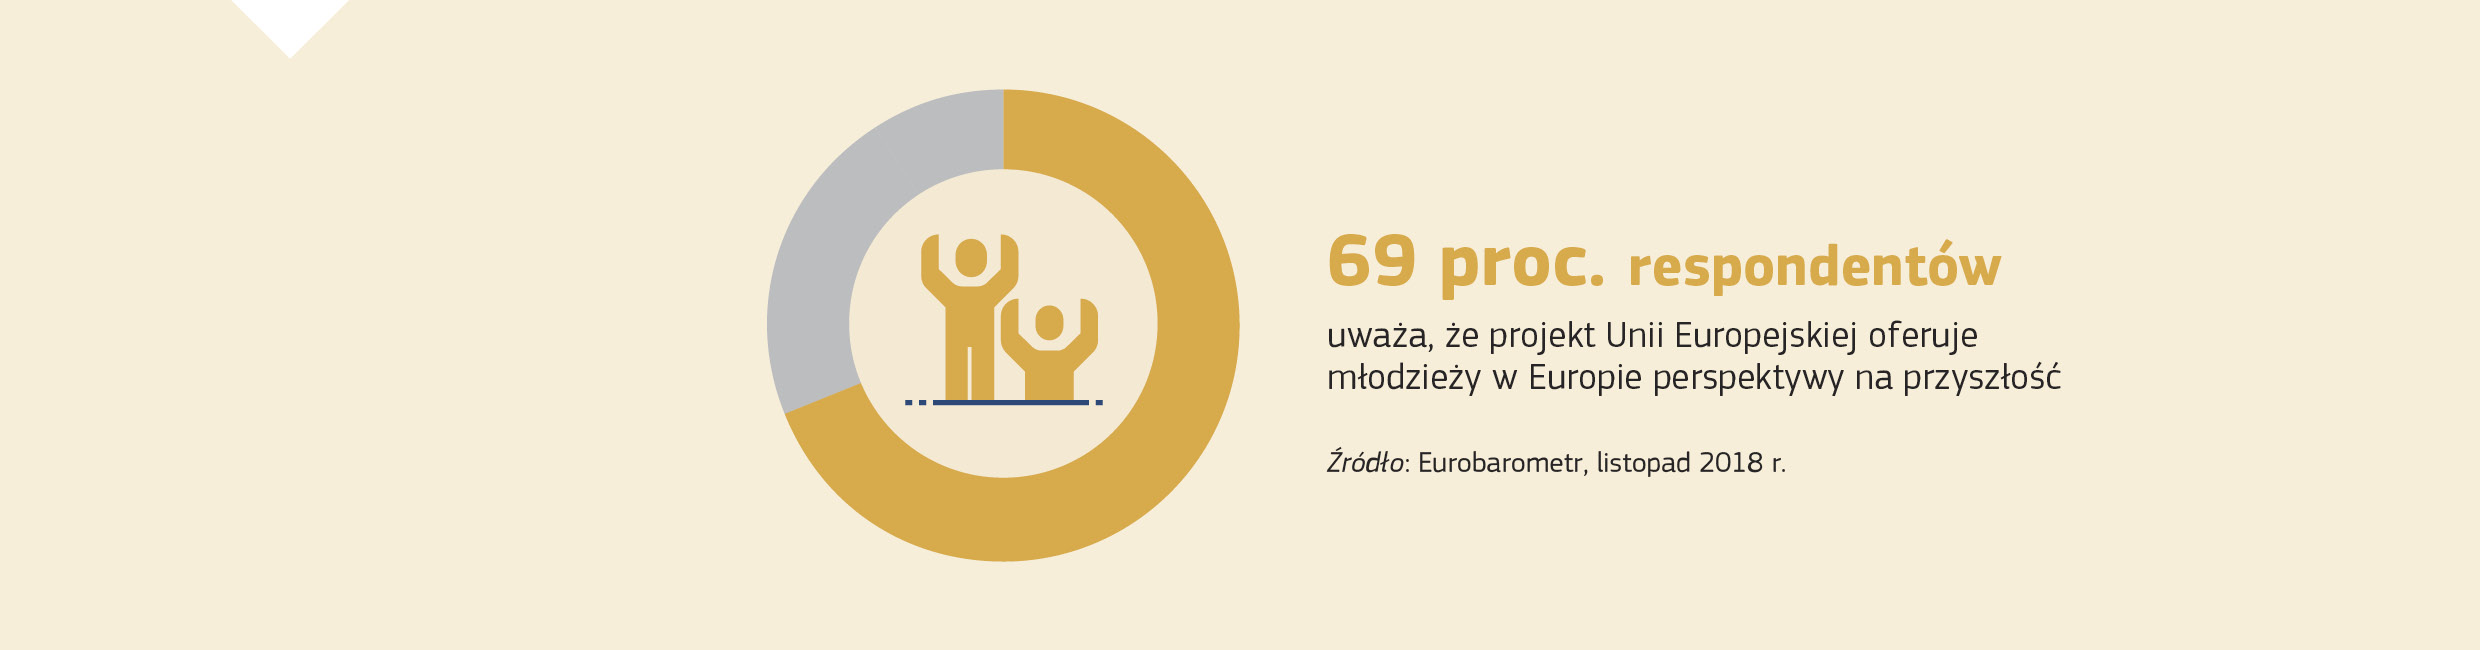 69 proc. respondentów uważa, że projekt Unii Europejskiej oferuje młodzieży w Europie perspektywy na przyszłość. Źródło: Eurobarometr, listopad 2018 r.